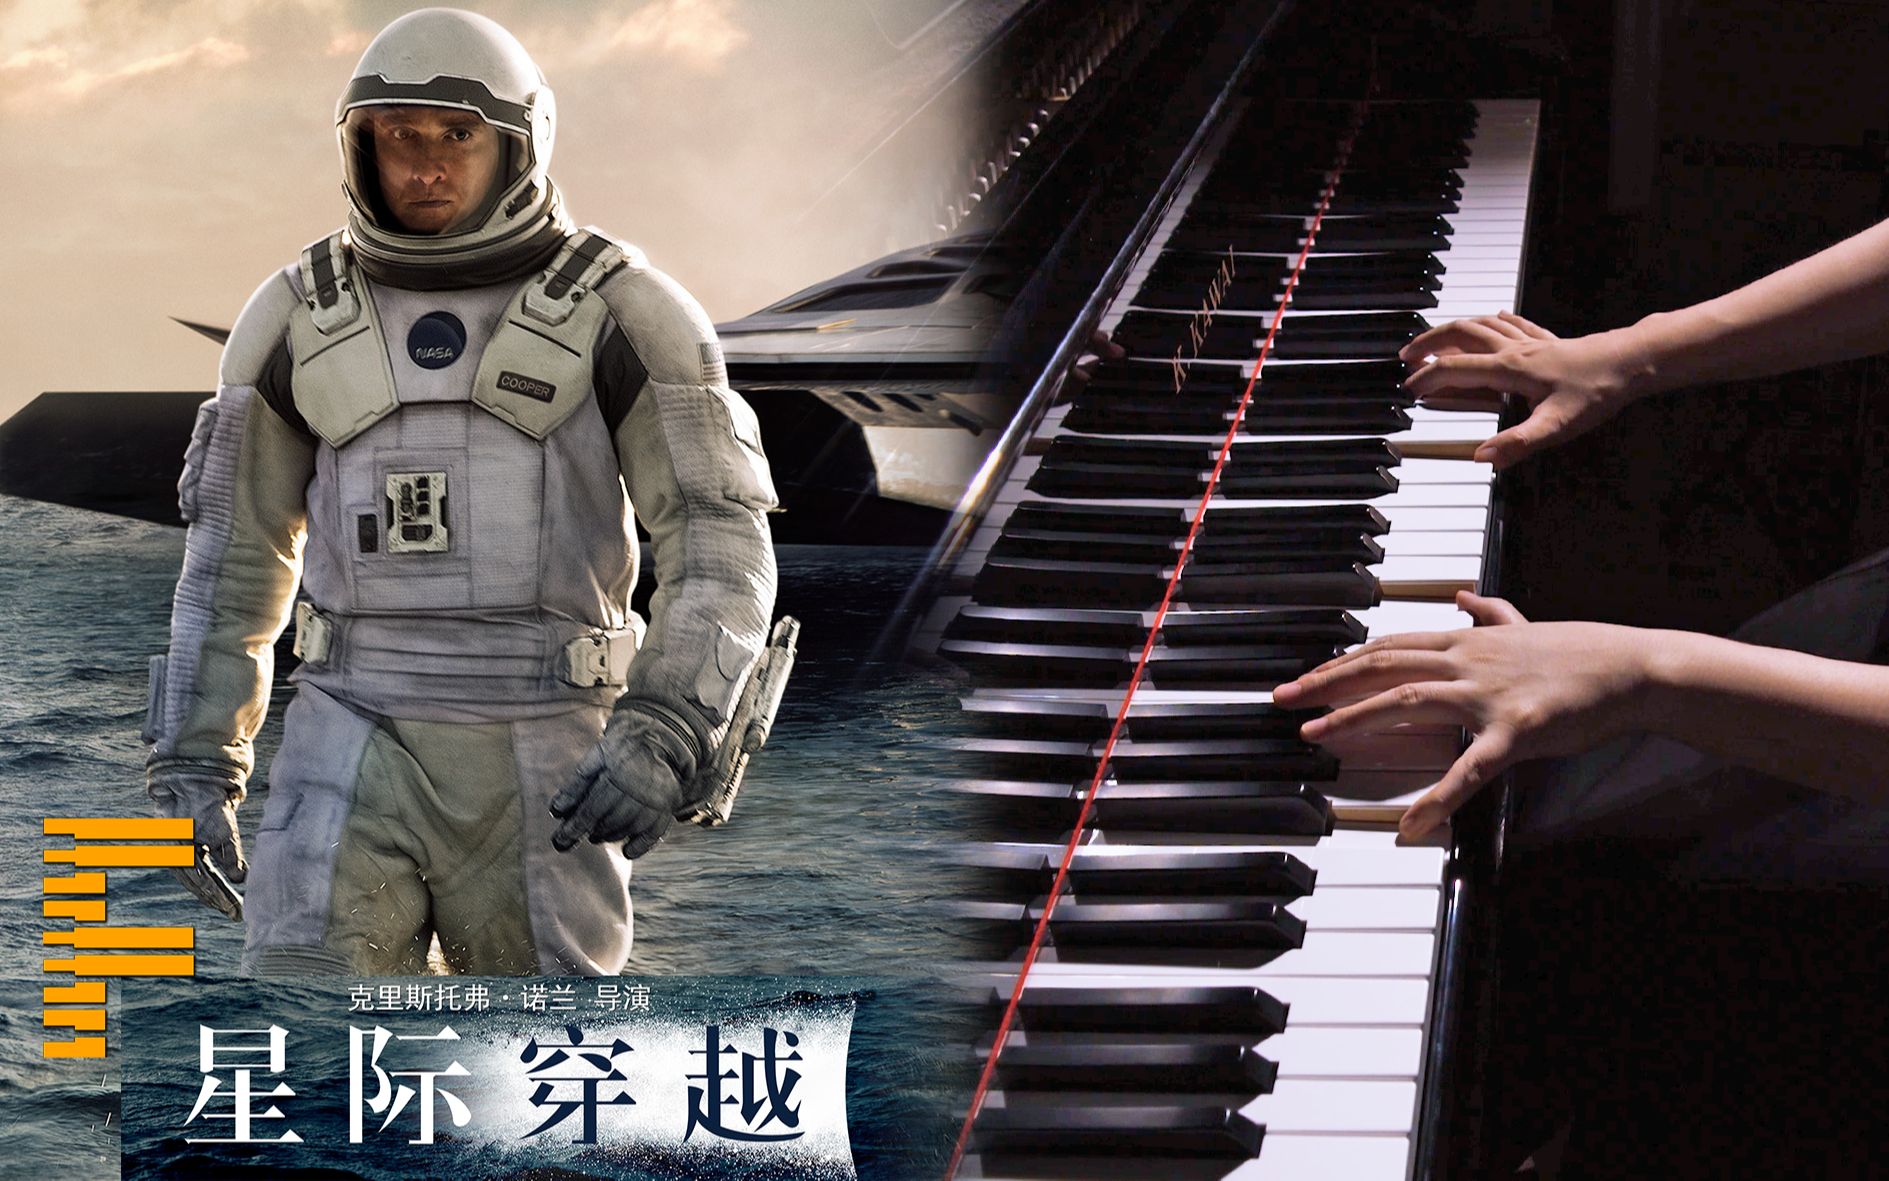 【钢琴演奏】诺兰科幻神作《星际穿越》主题音乐- Interstellar Main Theme -【FreyaPiano】